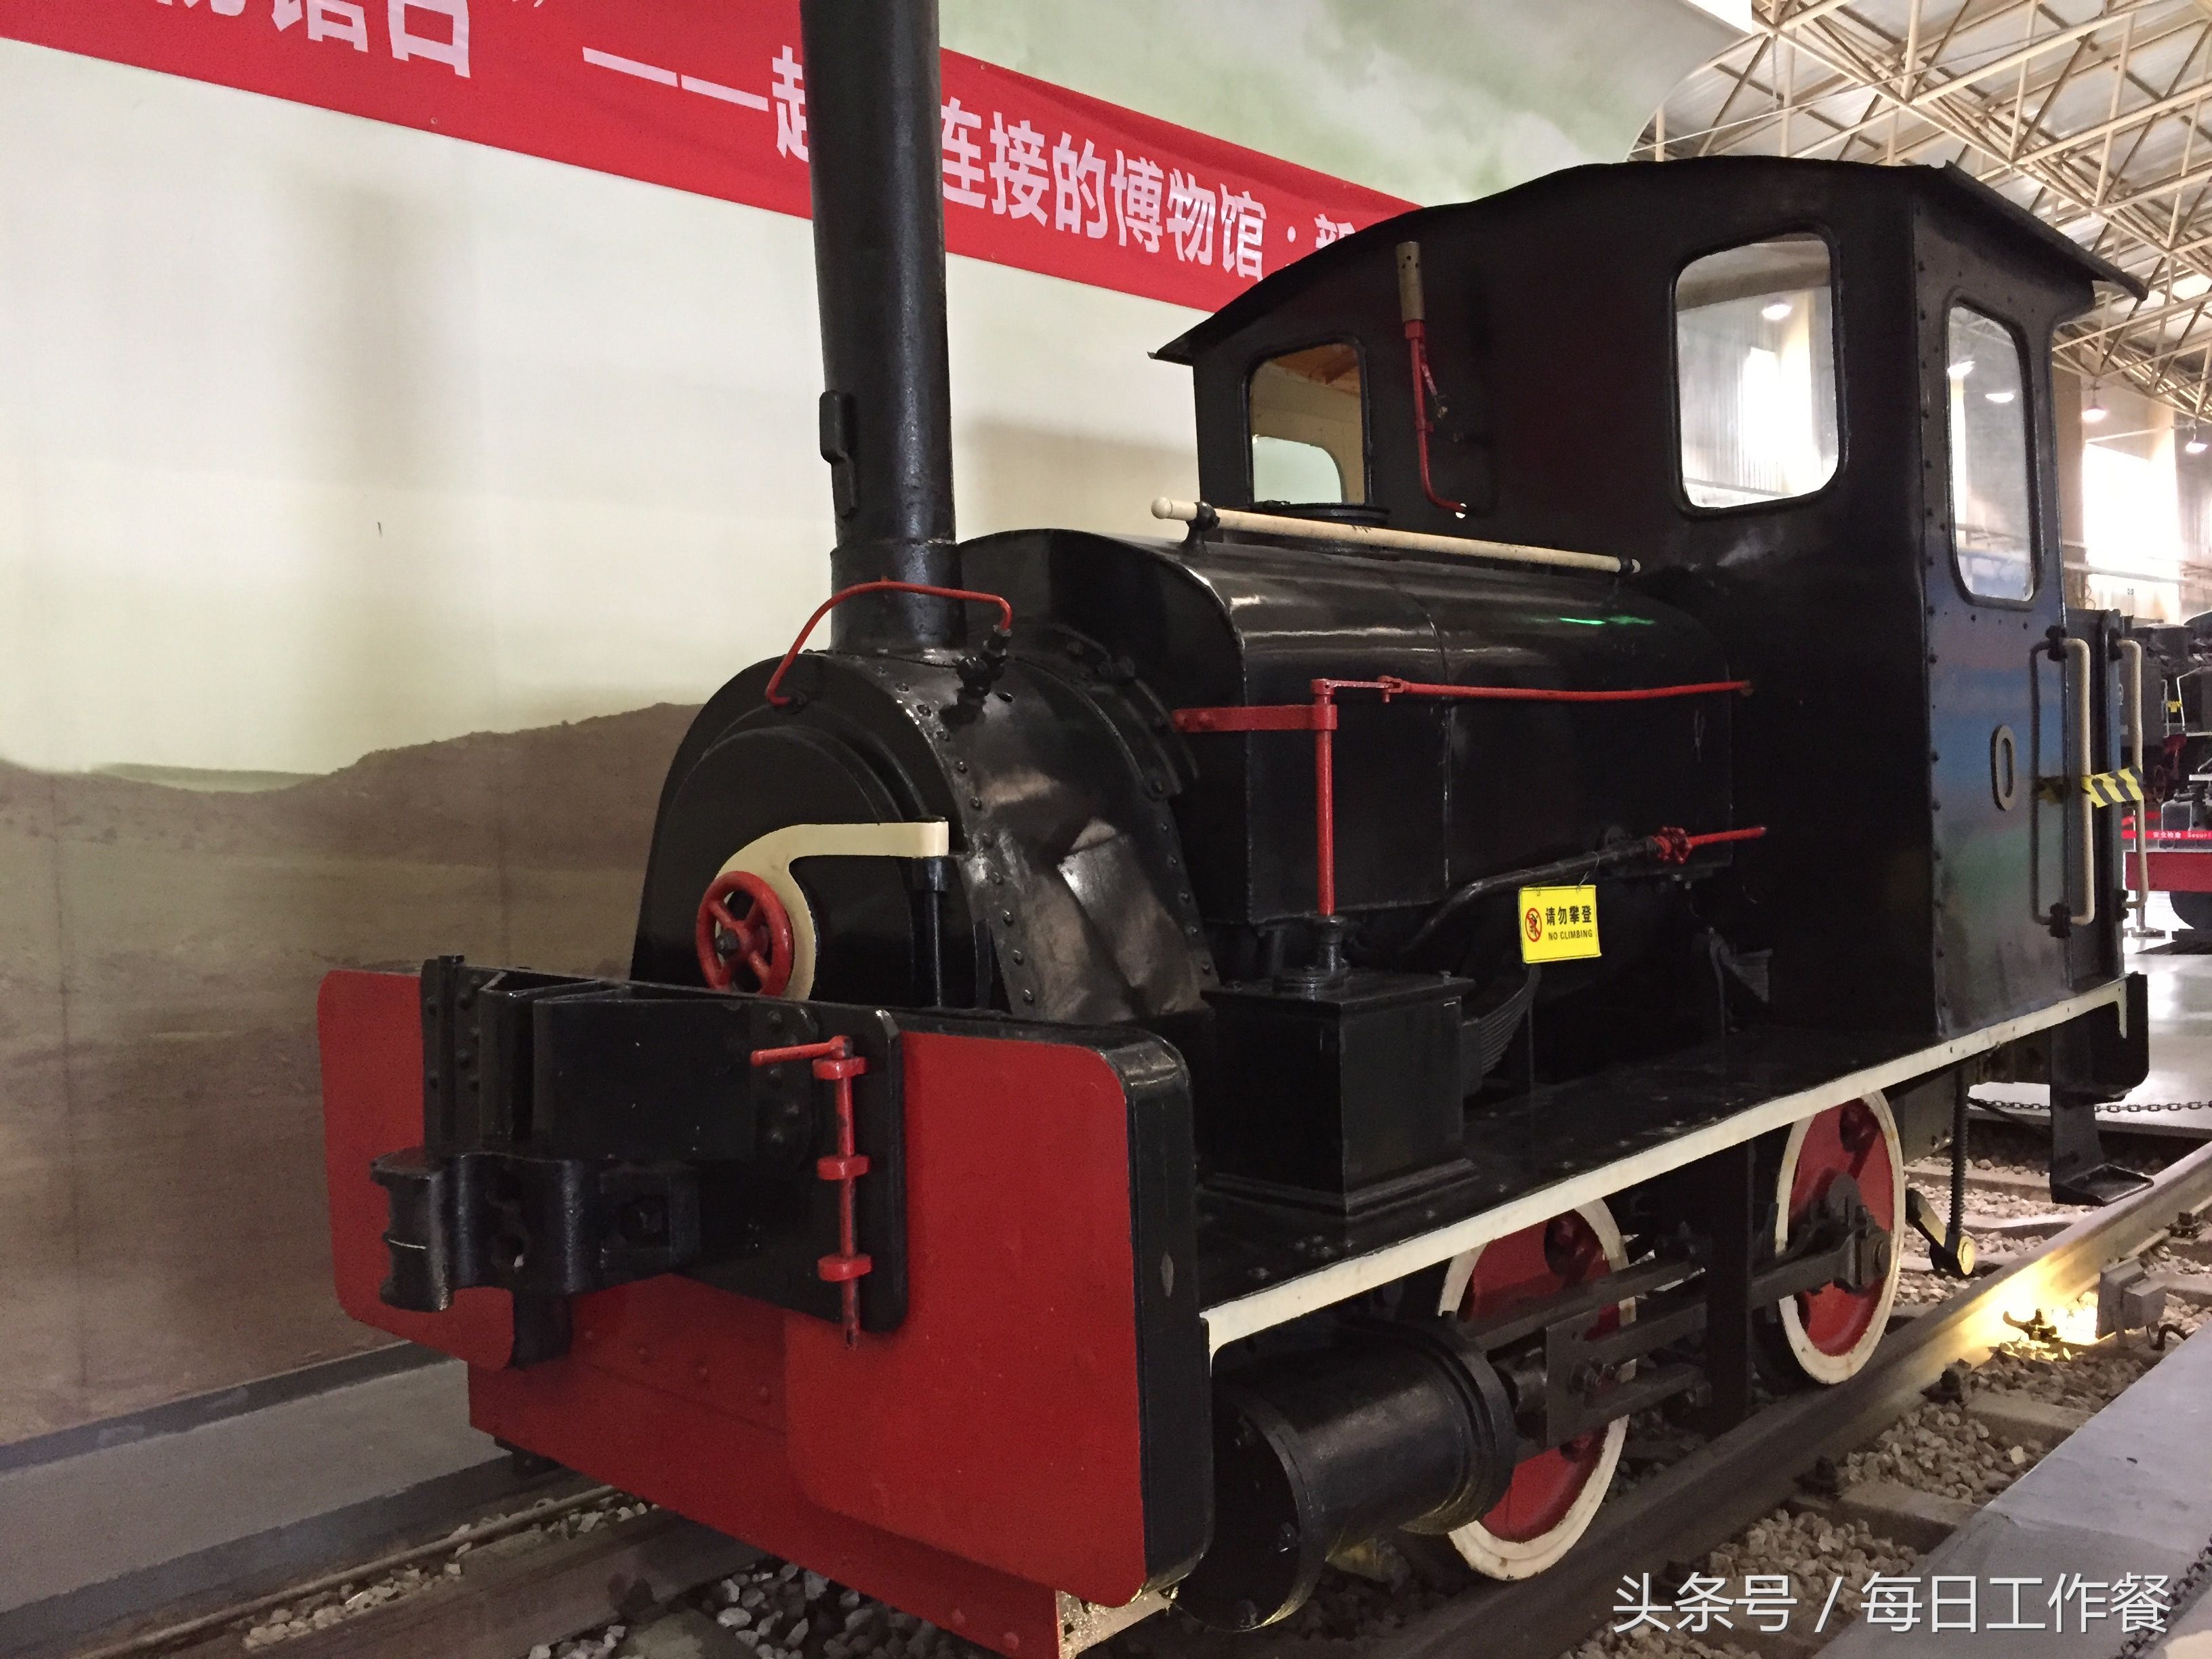 去北京东郊的中国铁道博物馆,看托马斯和它的